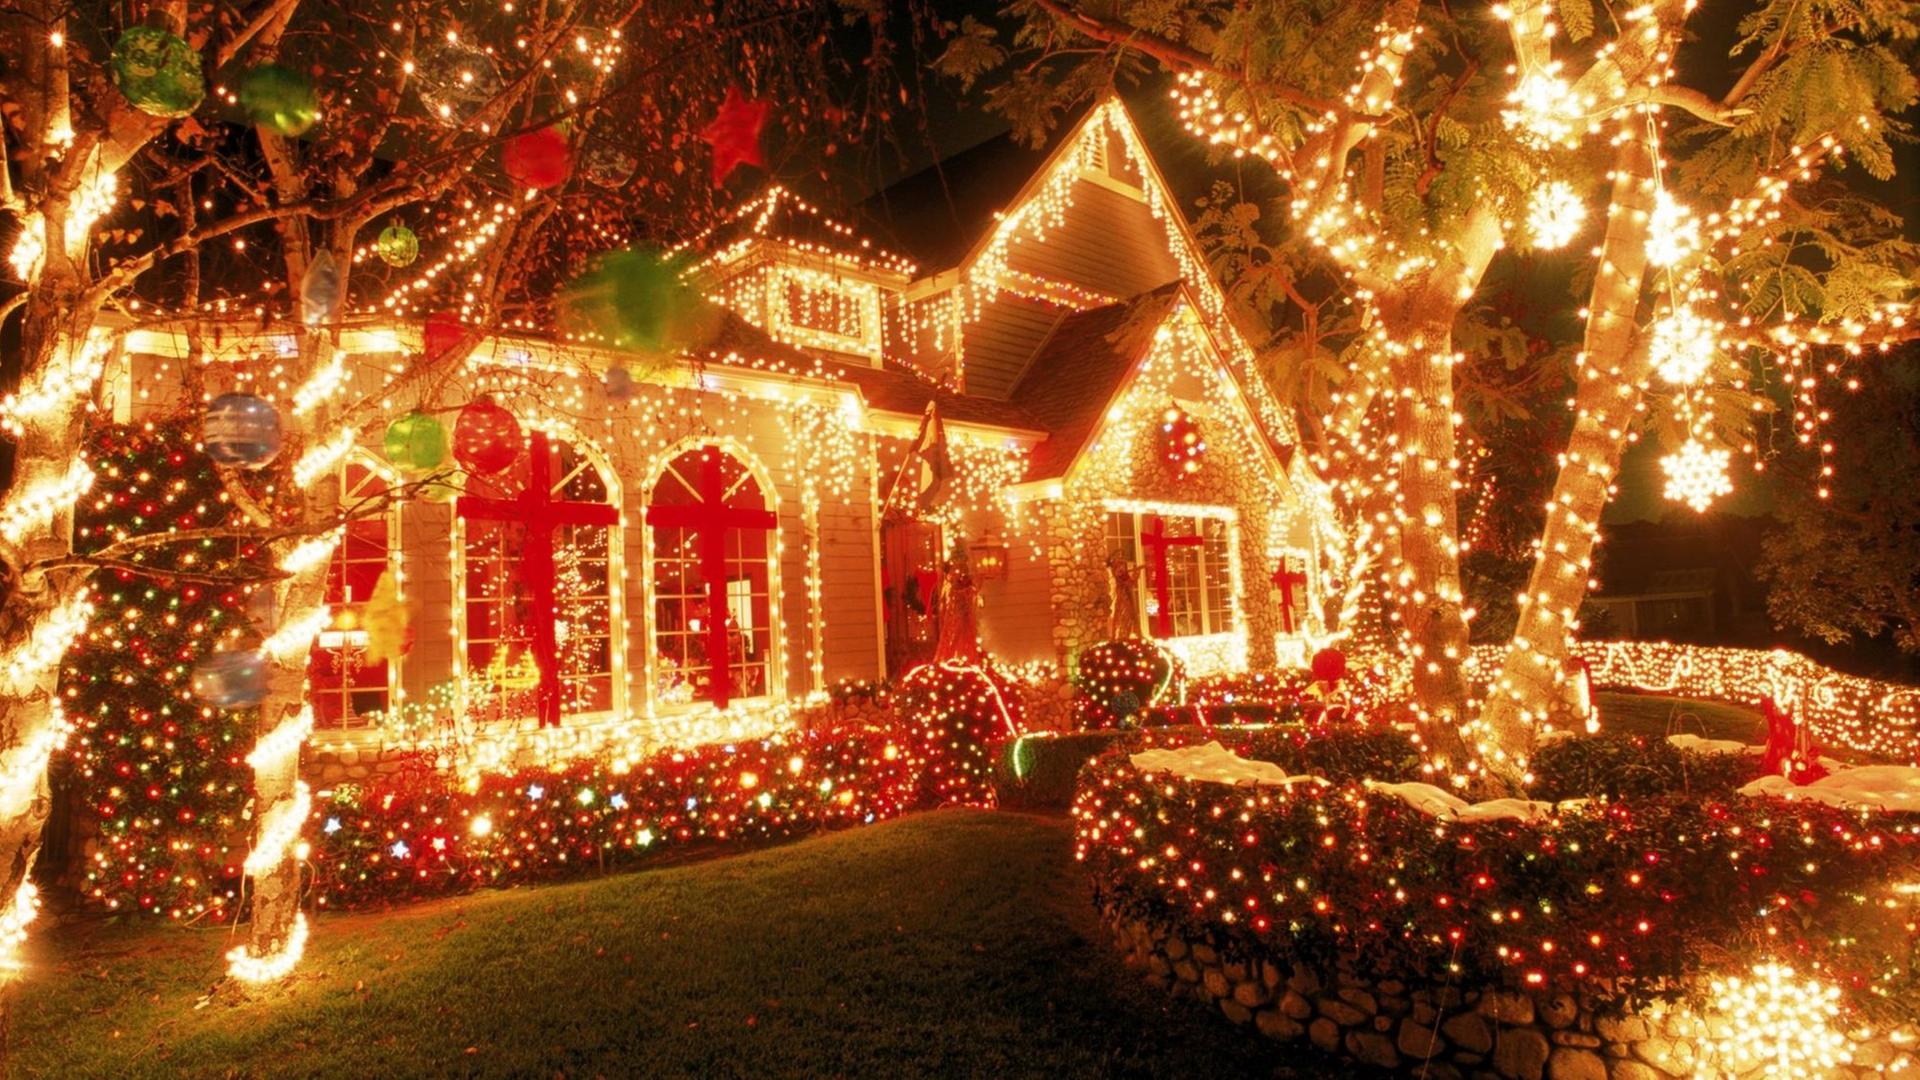 Ein weihnachtlich beleuchtetes Haus in Kalifornien.